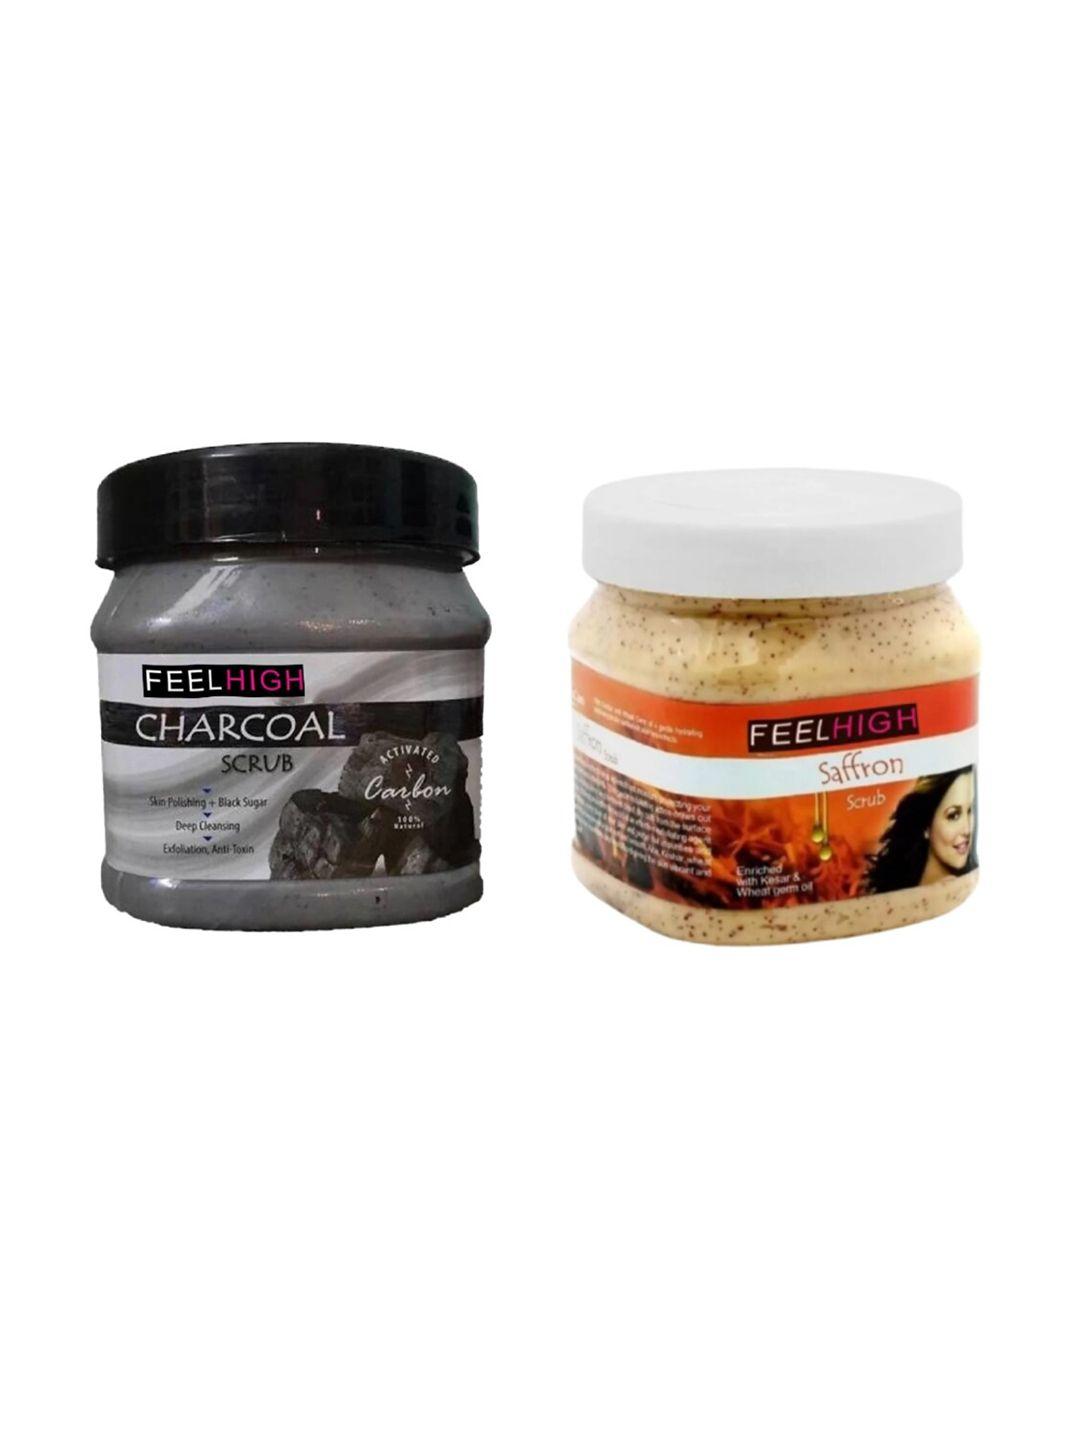 feelhigh set of 2 saffron scrub & charcoal face & body scrub-500 ml each